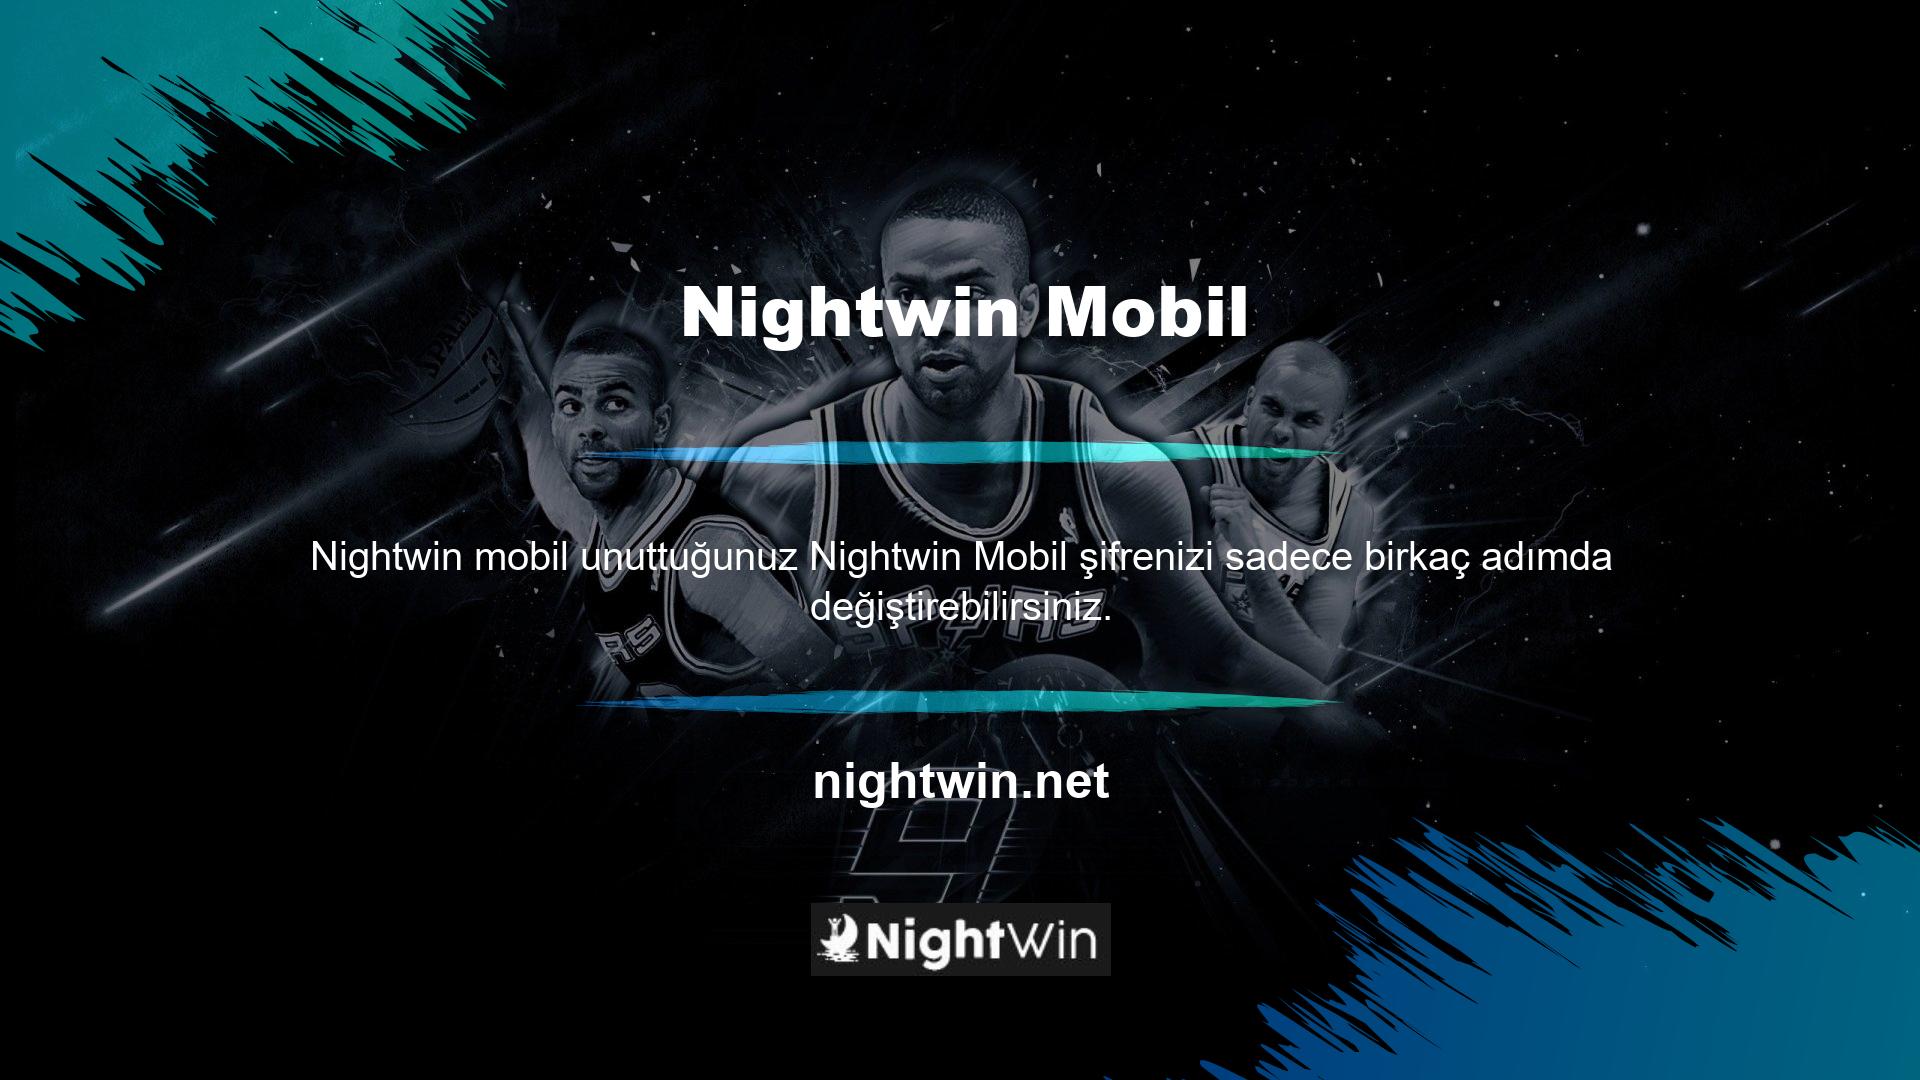 Nightwin sitesine üye olduktan sonra manuel olarak şifre belirlemeniz gerekecektir